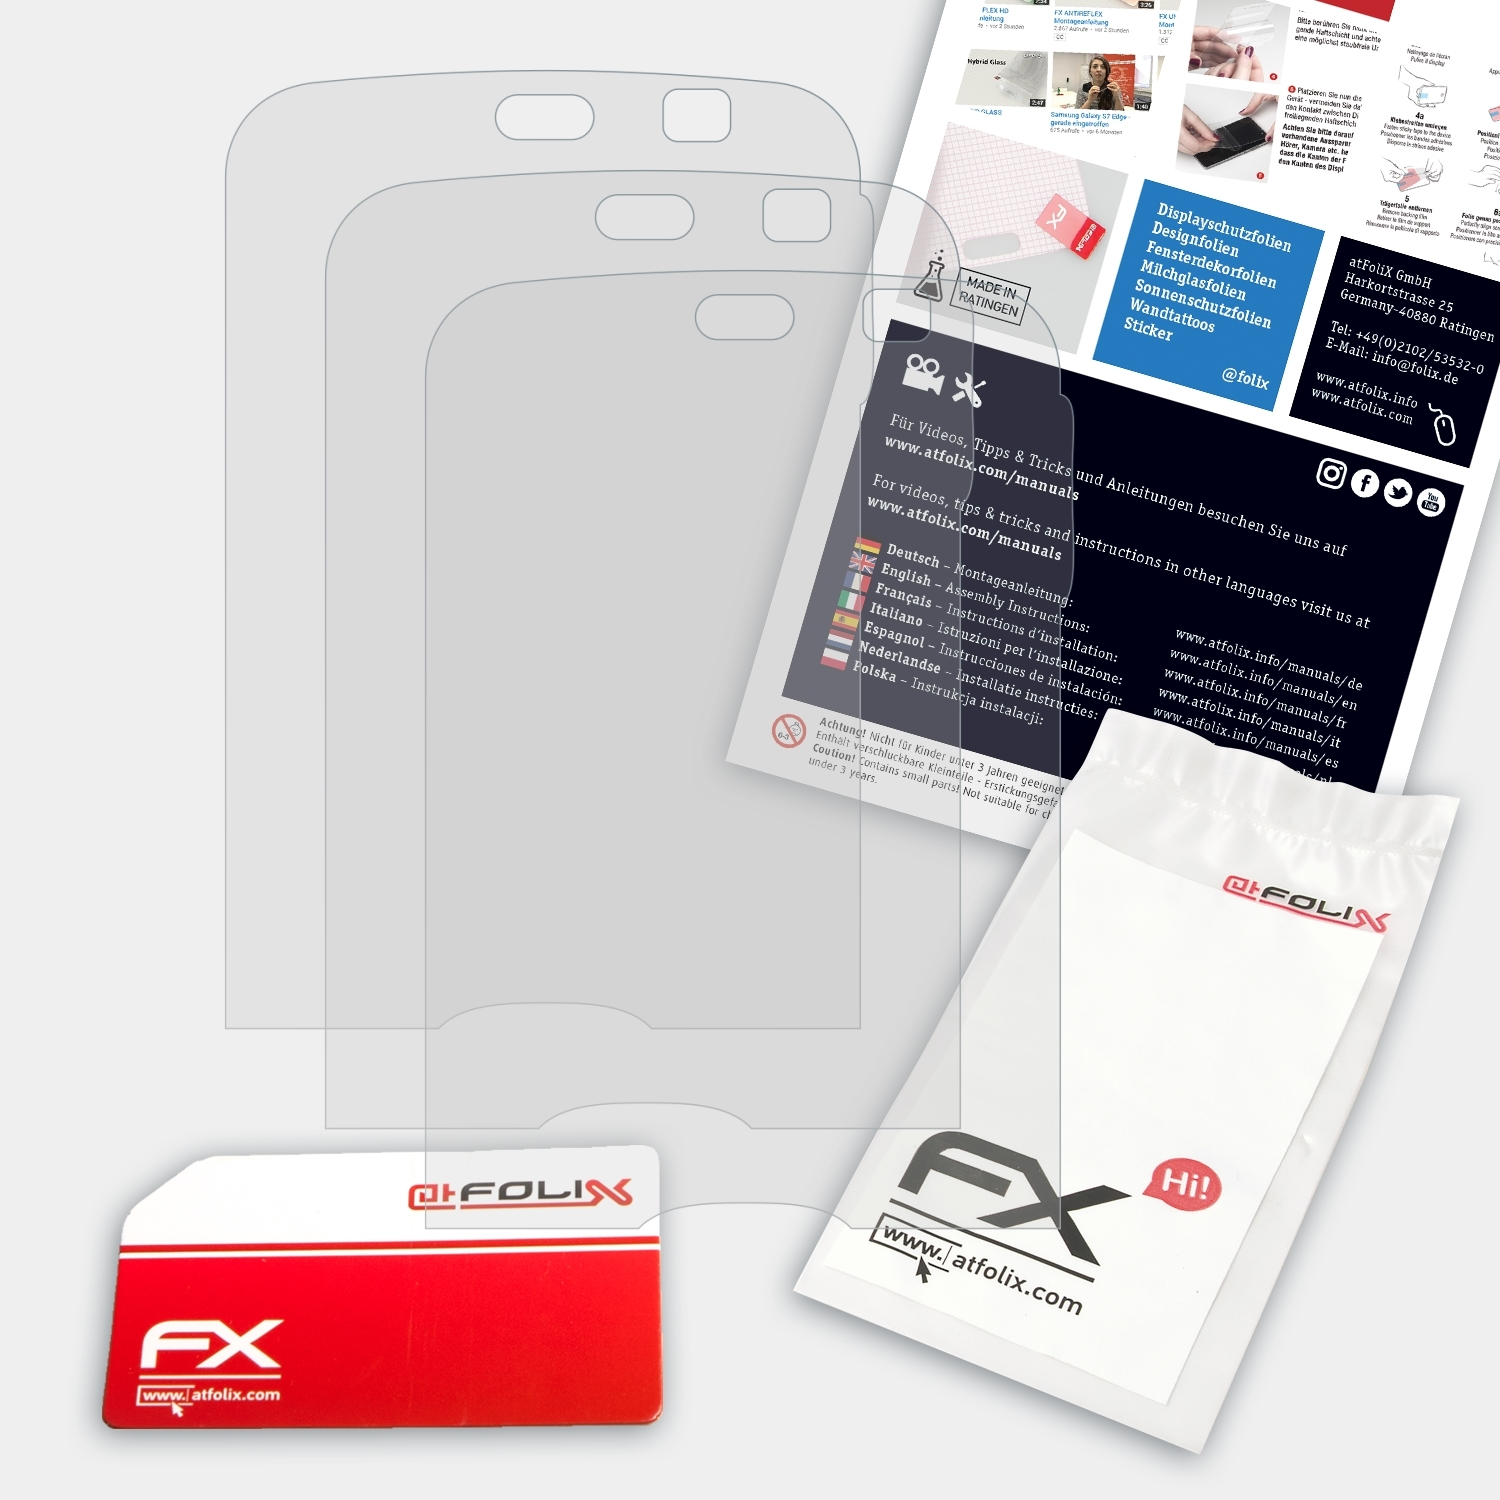 3x Displayschutz(für ATFOLIX N79) FX-Antireflex Nokia